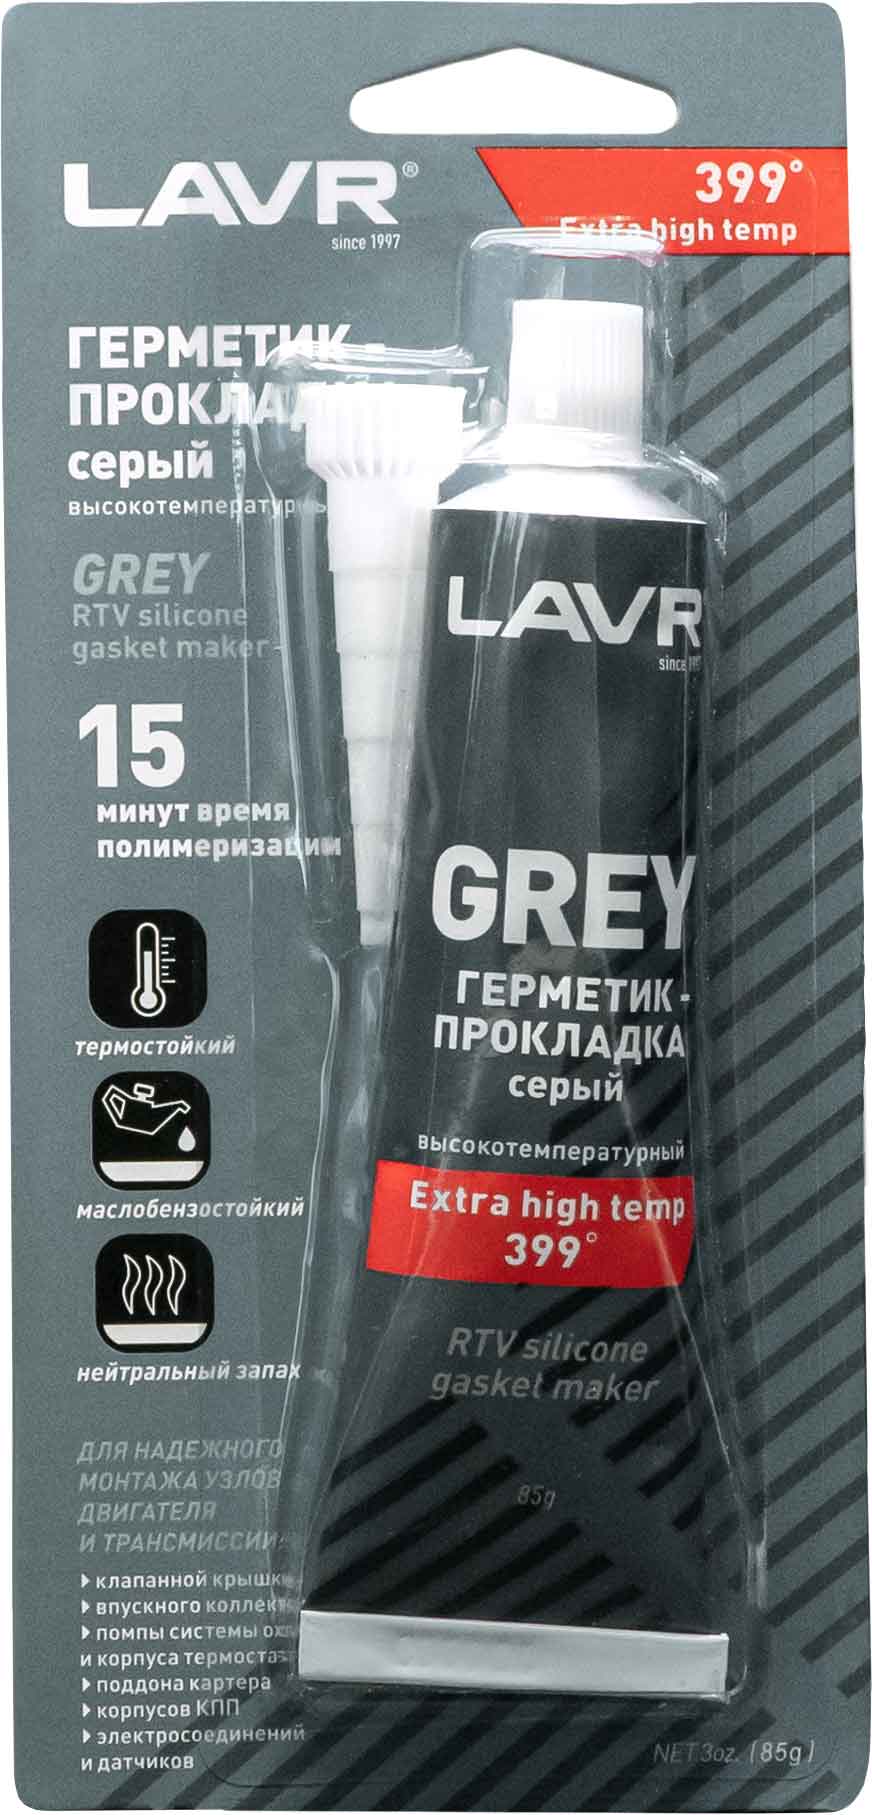 Купить герметик-прокладку серый высокотемпературный ЛАВР в 